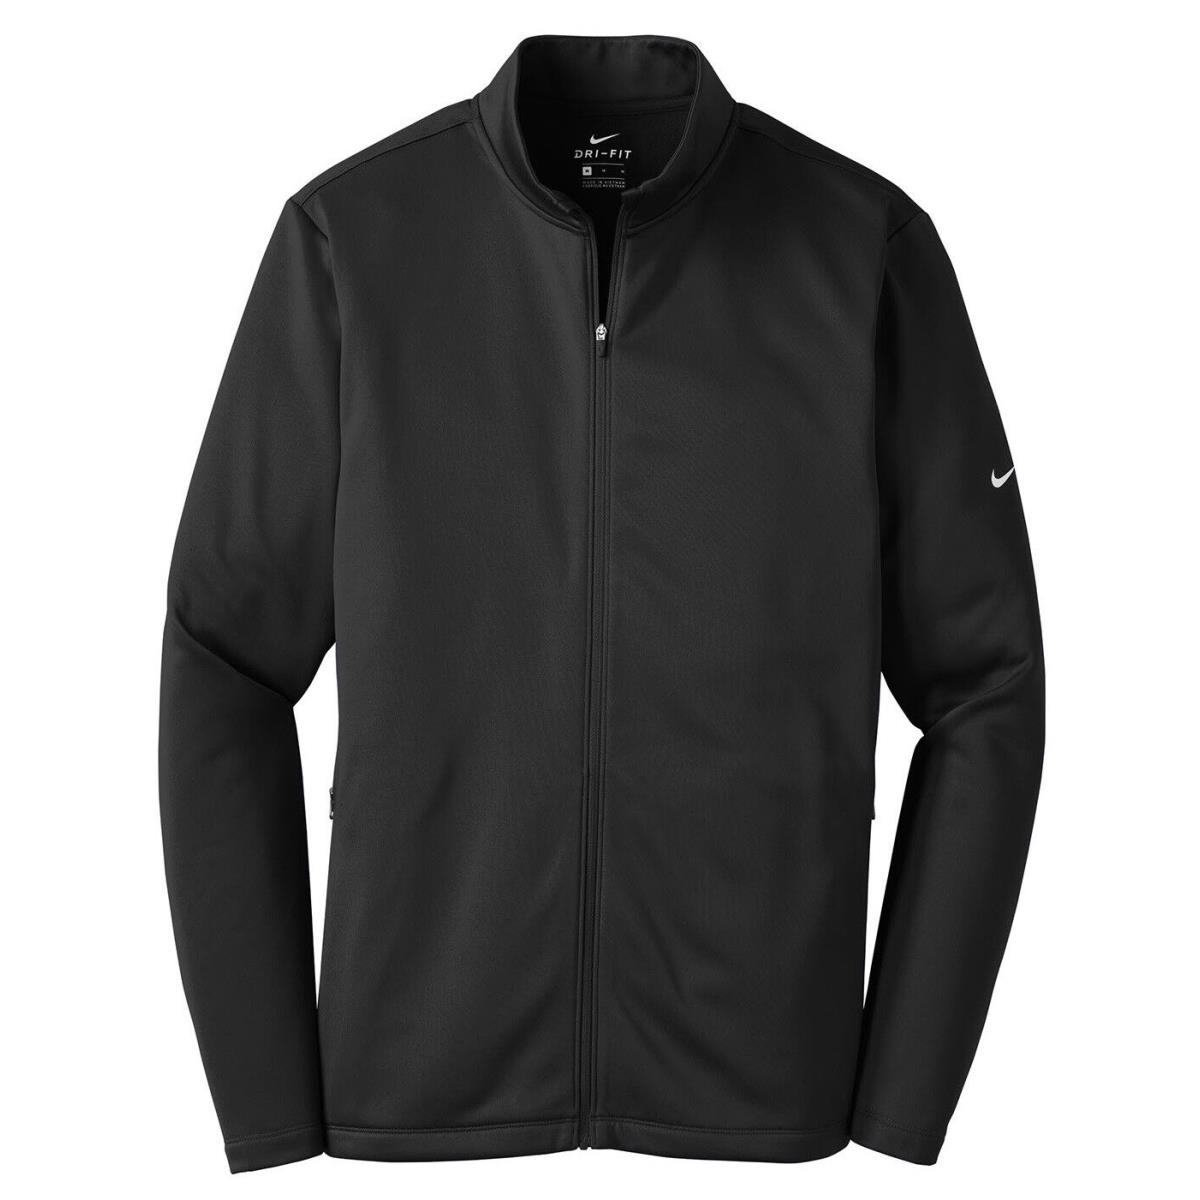 Men`s Nike Therma Fit Moisture Wicking Fleece Full Fip Jacket Pockets XS-4XL Black